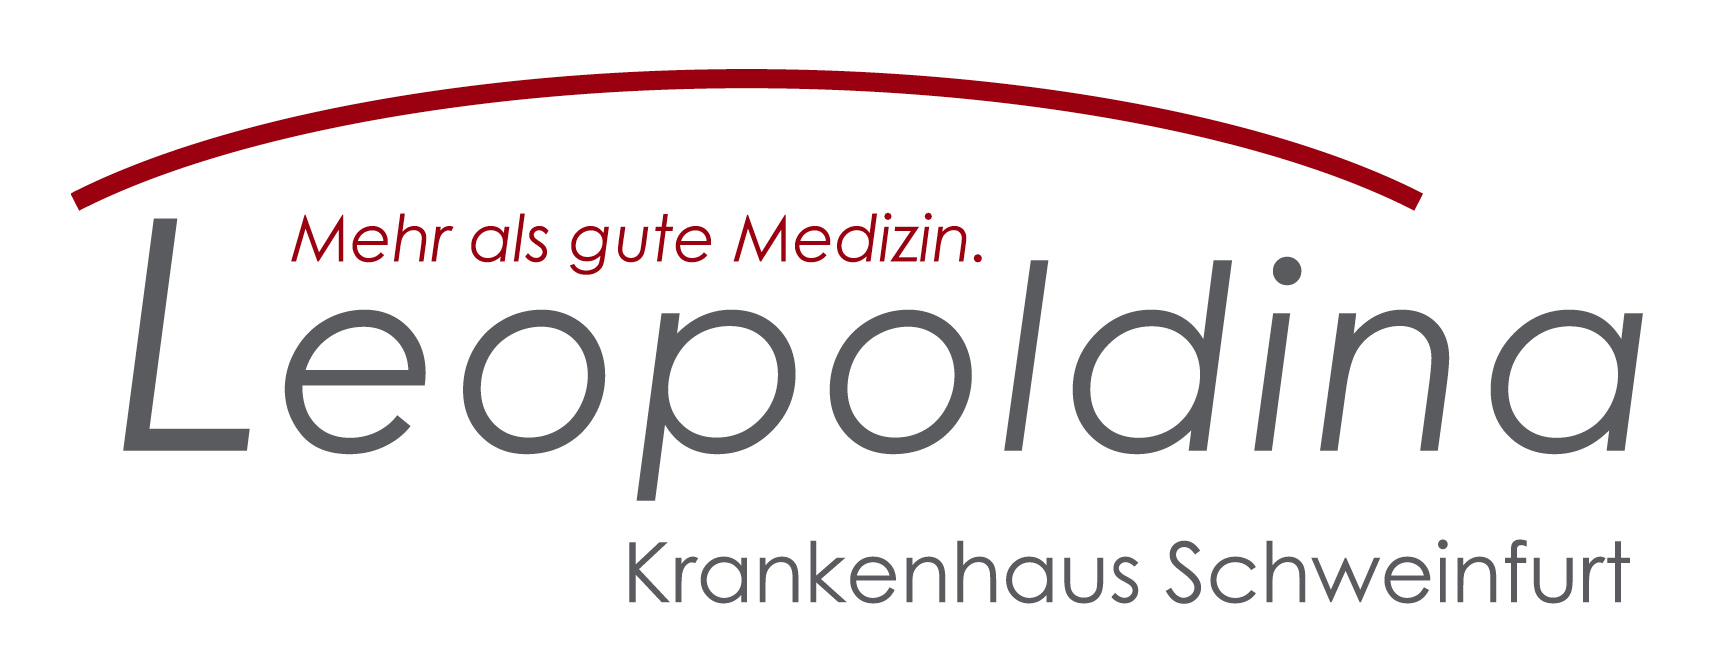 Leopoldina Logo